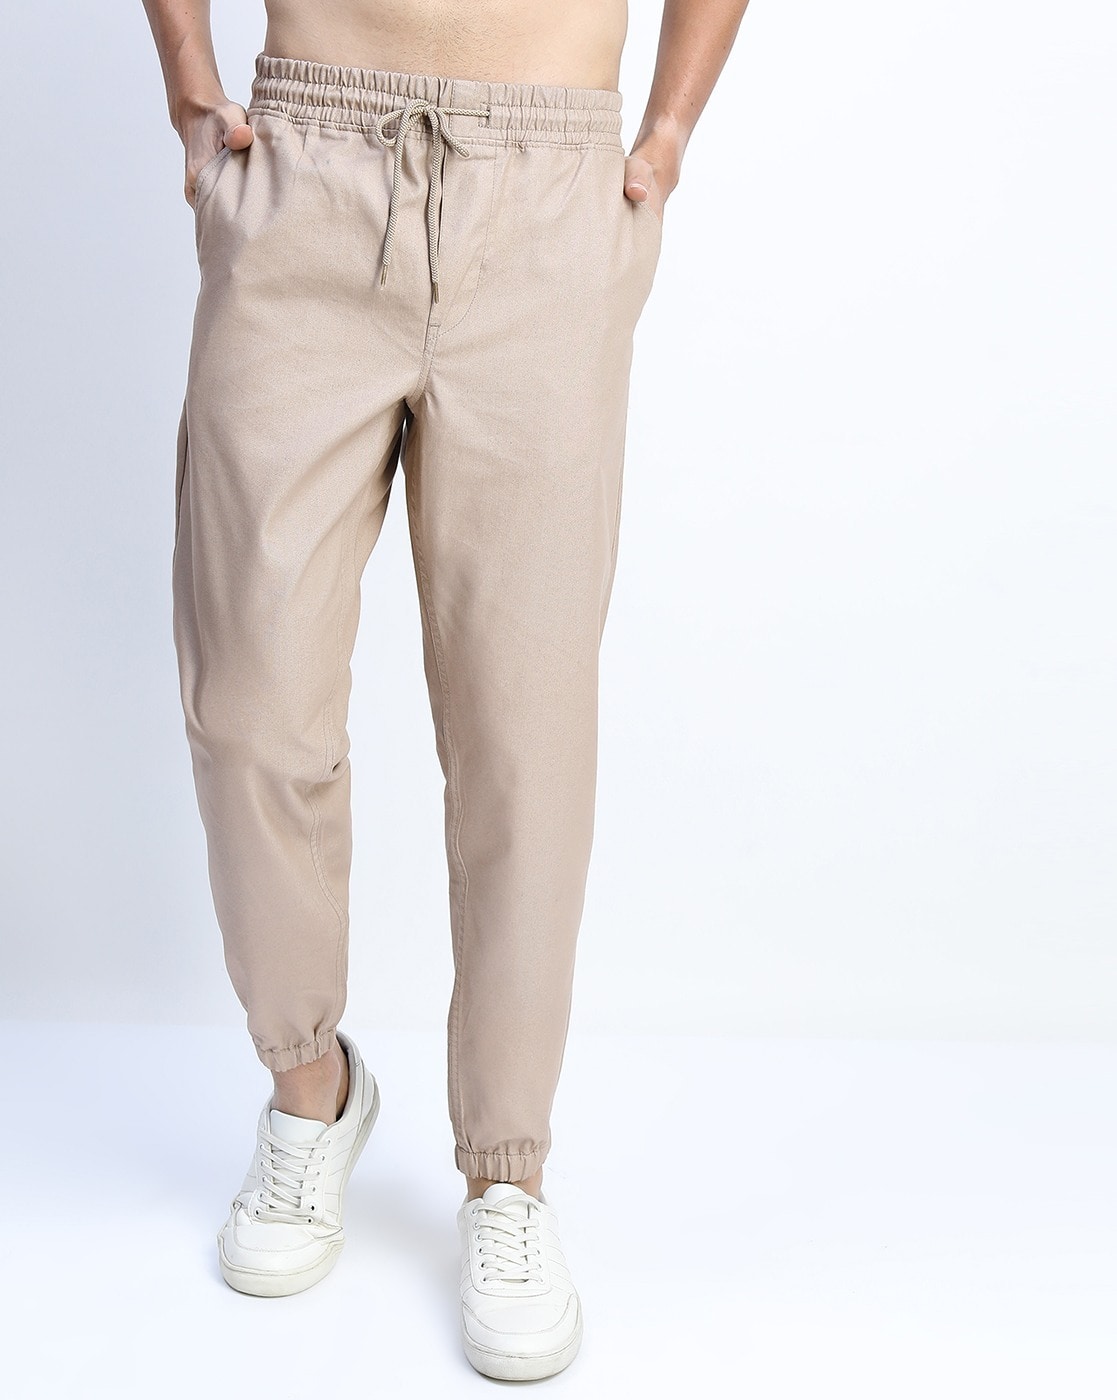 Buy Beige Trousers  Pants for Men by Ketch Online  Ajiocom